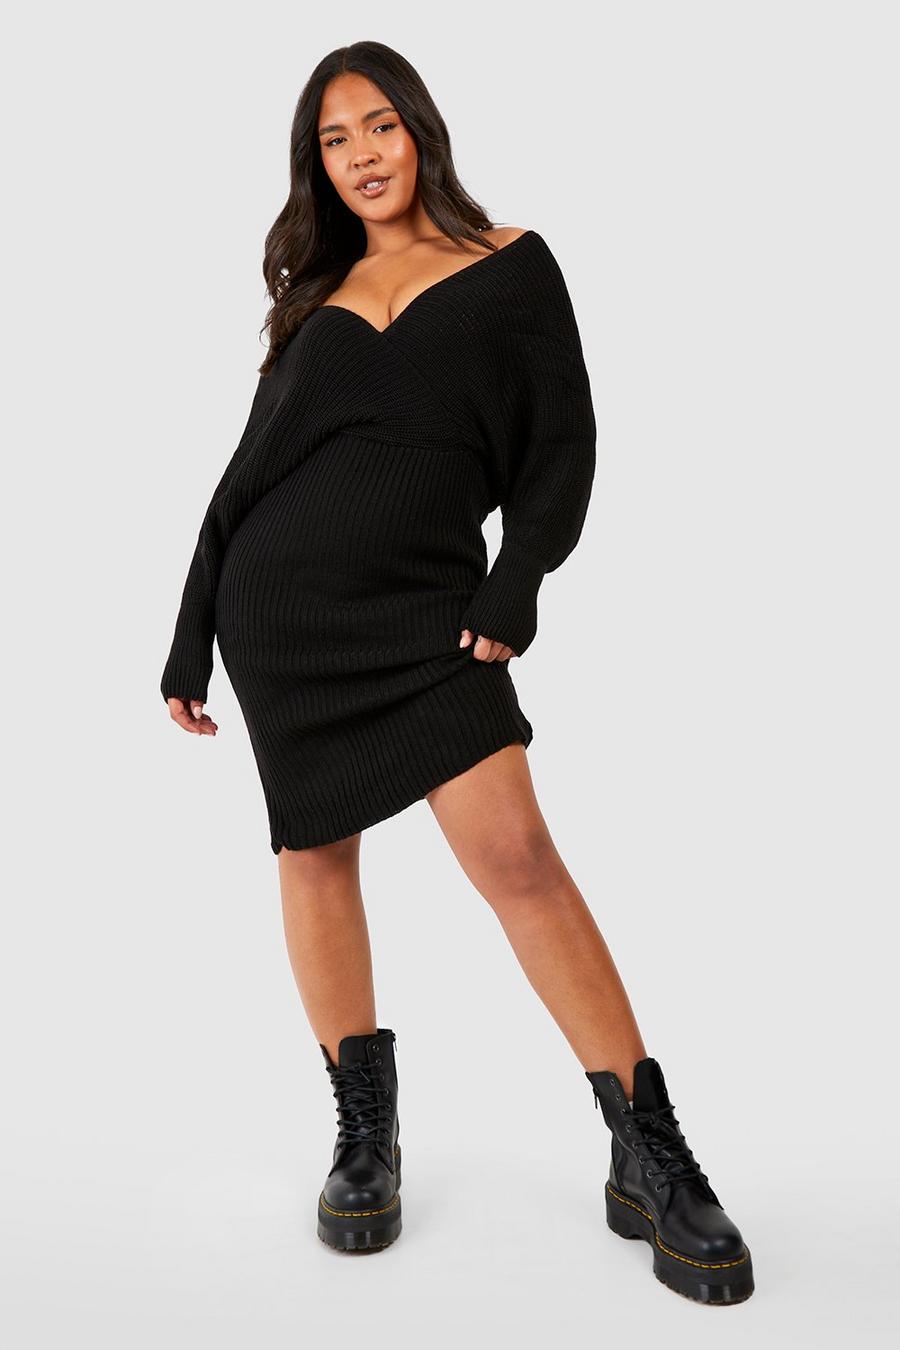 שחור negro שמלת סוודר בסריגת ריב עם כתפיים חשופות, מידות גדולות